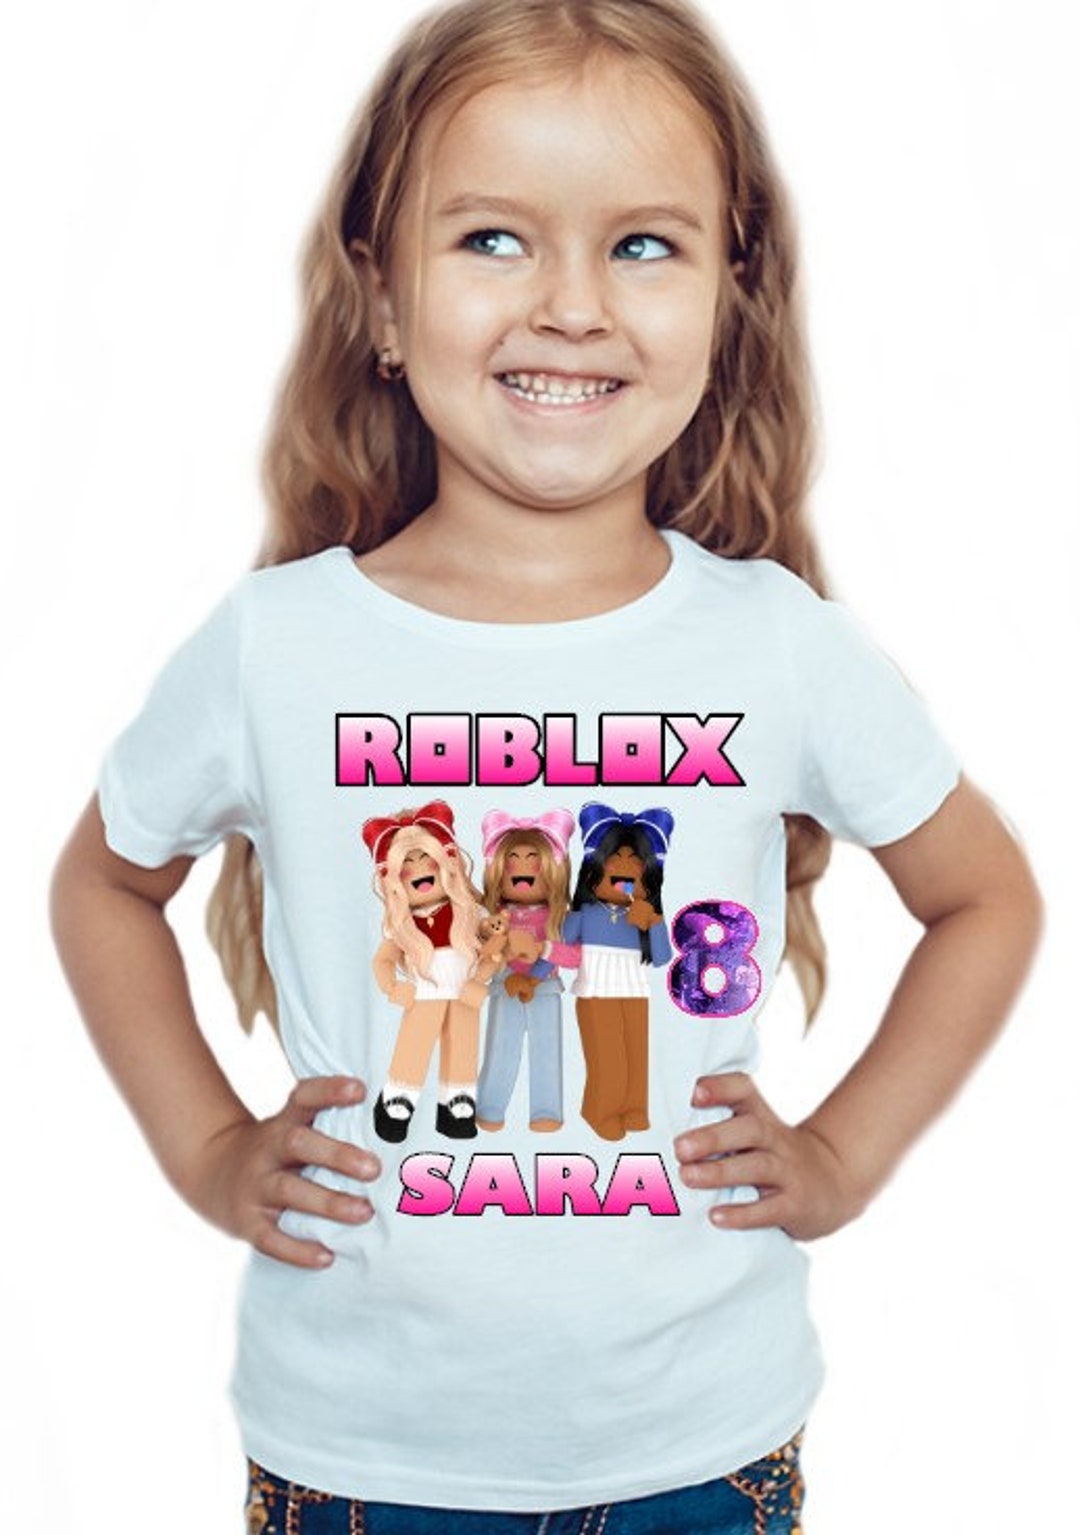 Roblox Girls Personalised Birthday T Shirt Kids Girl Fun Tee - Etsy UK